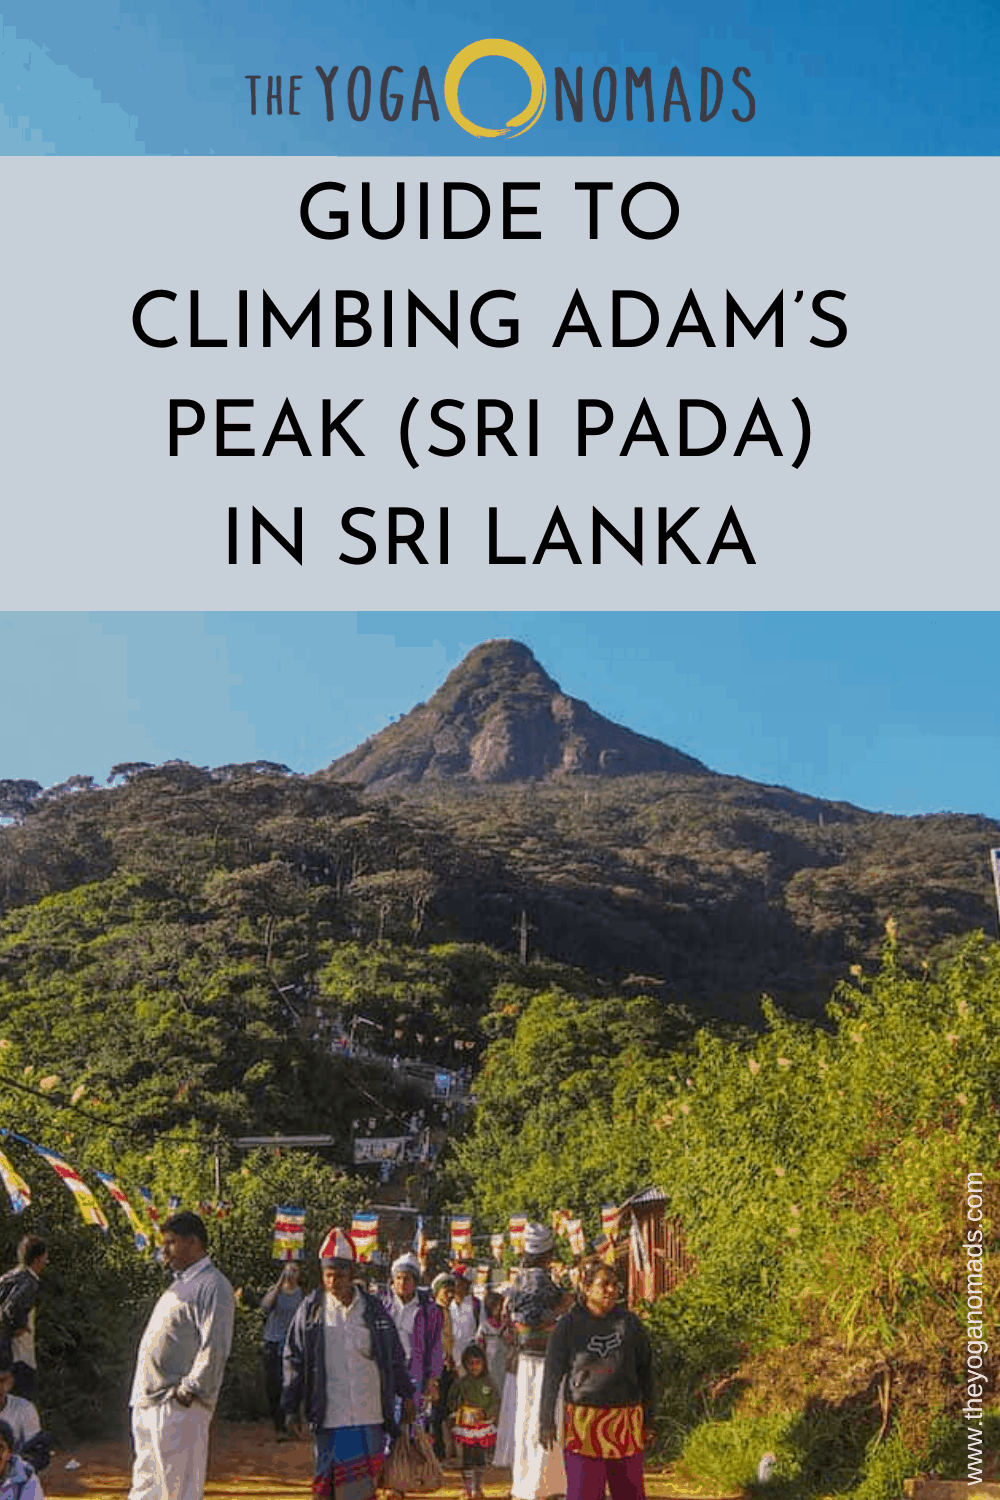   Guide pour escalader le pic d'Adam au Sri Lanka